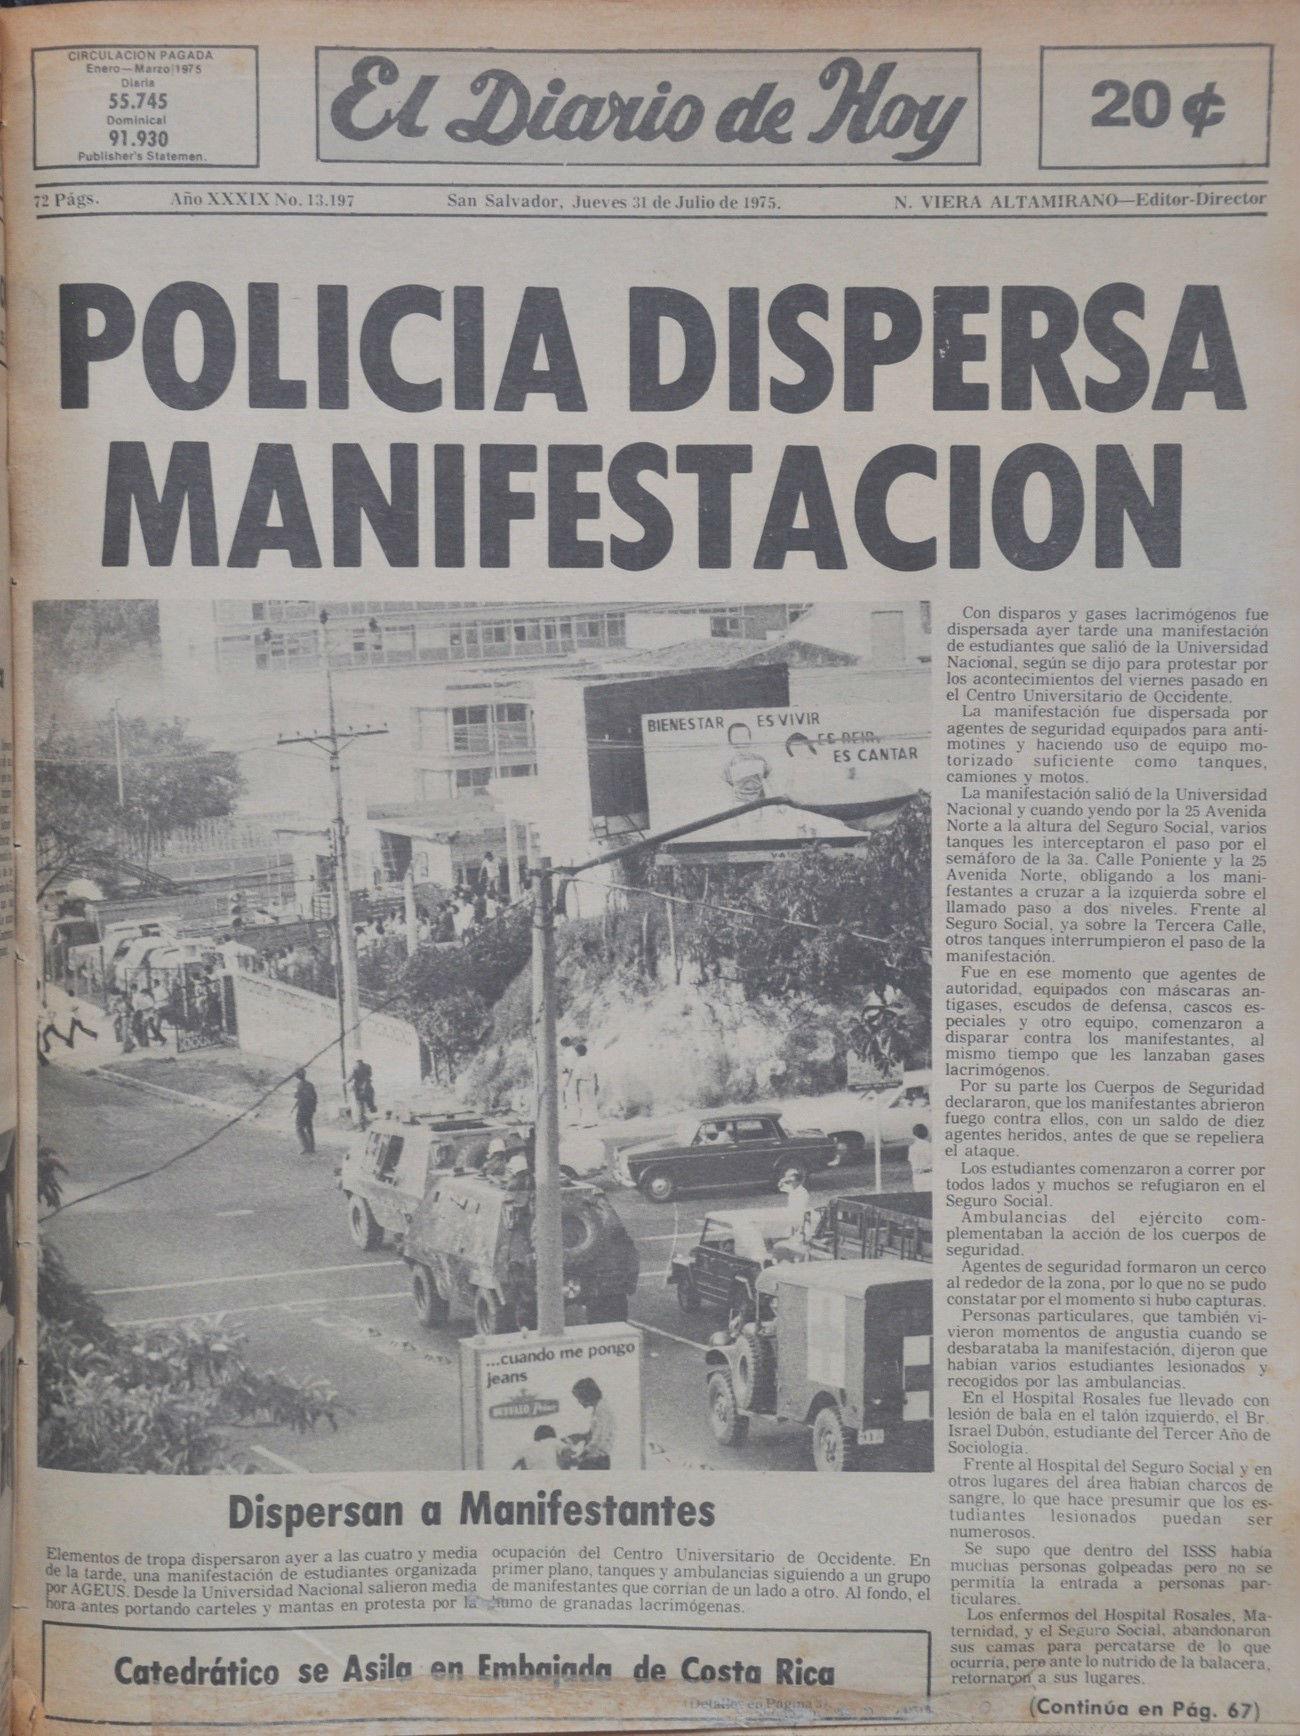 Portada de El Diario de Hoy sobre la manifestación de los estudiantes que terminó en tragedia, el 30 de julio de 1975 por la tarde.